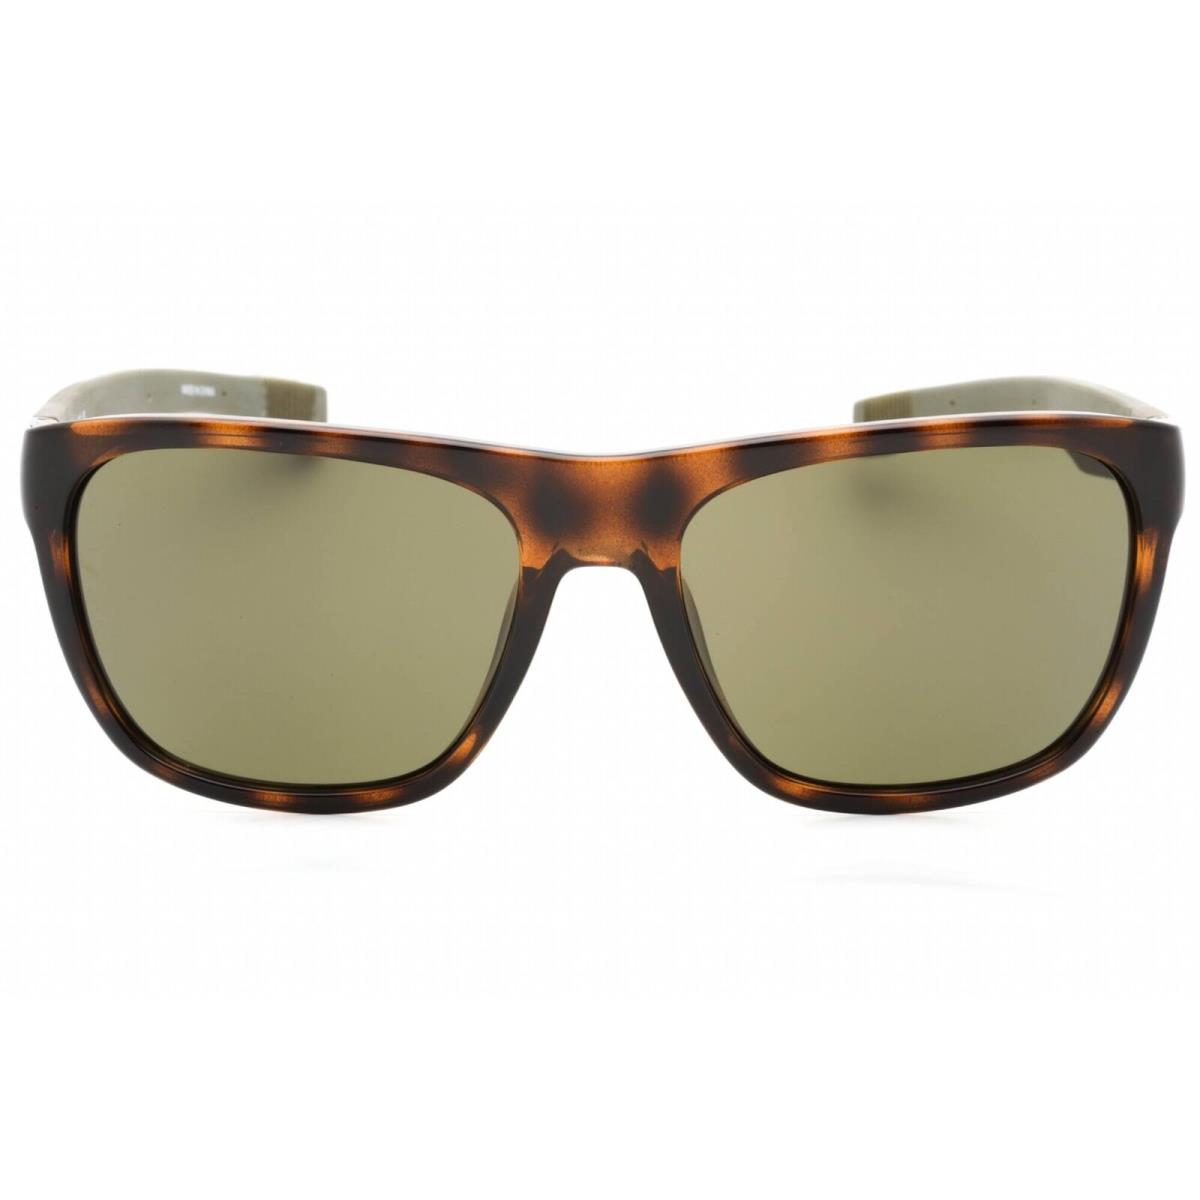 Lacoste Unisex Sunglasses Green Lens Dark Havana Rectangular Frame L664S 220